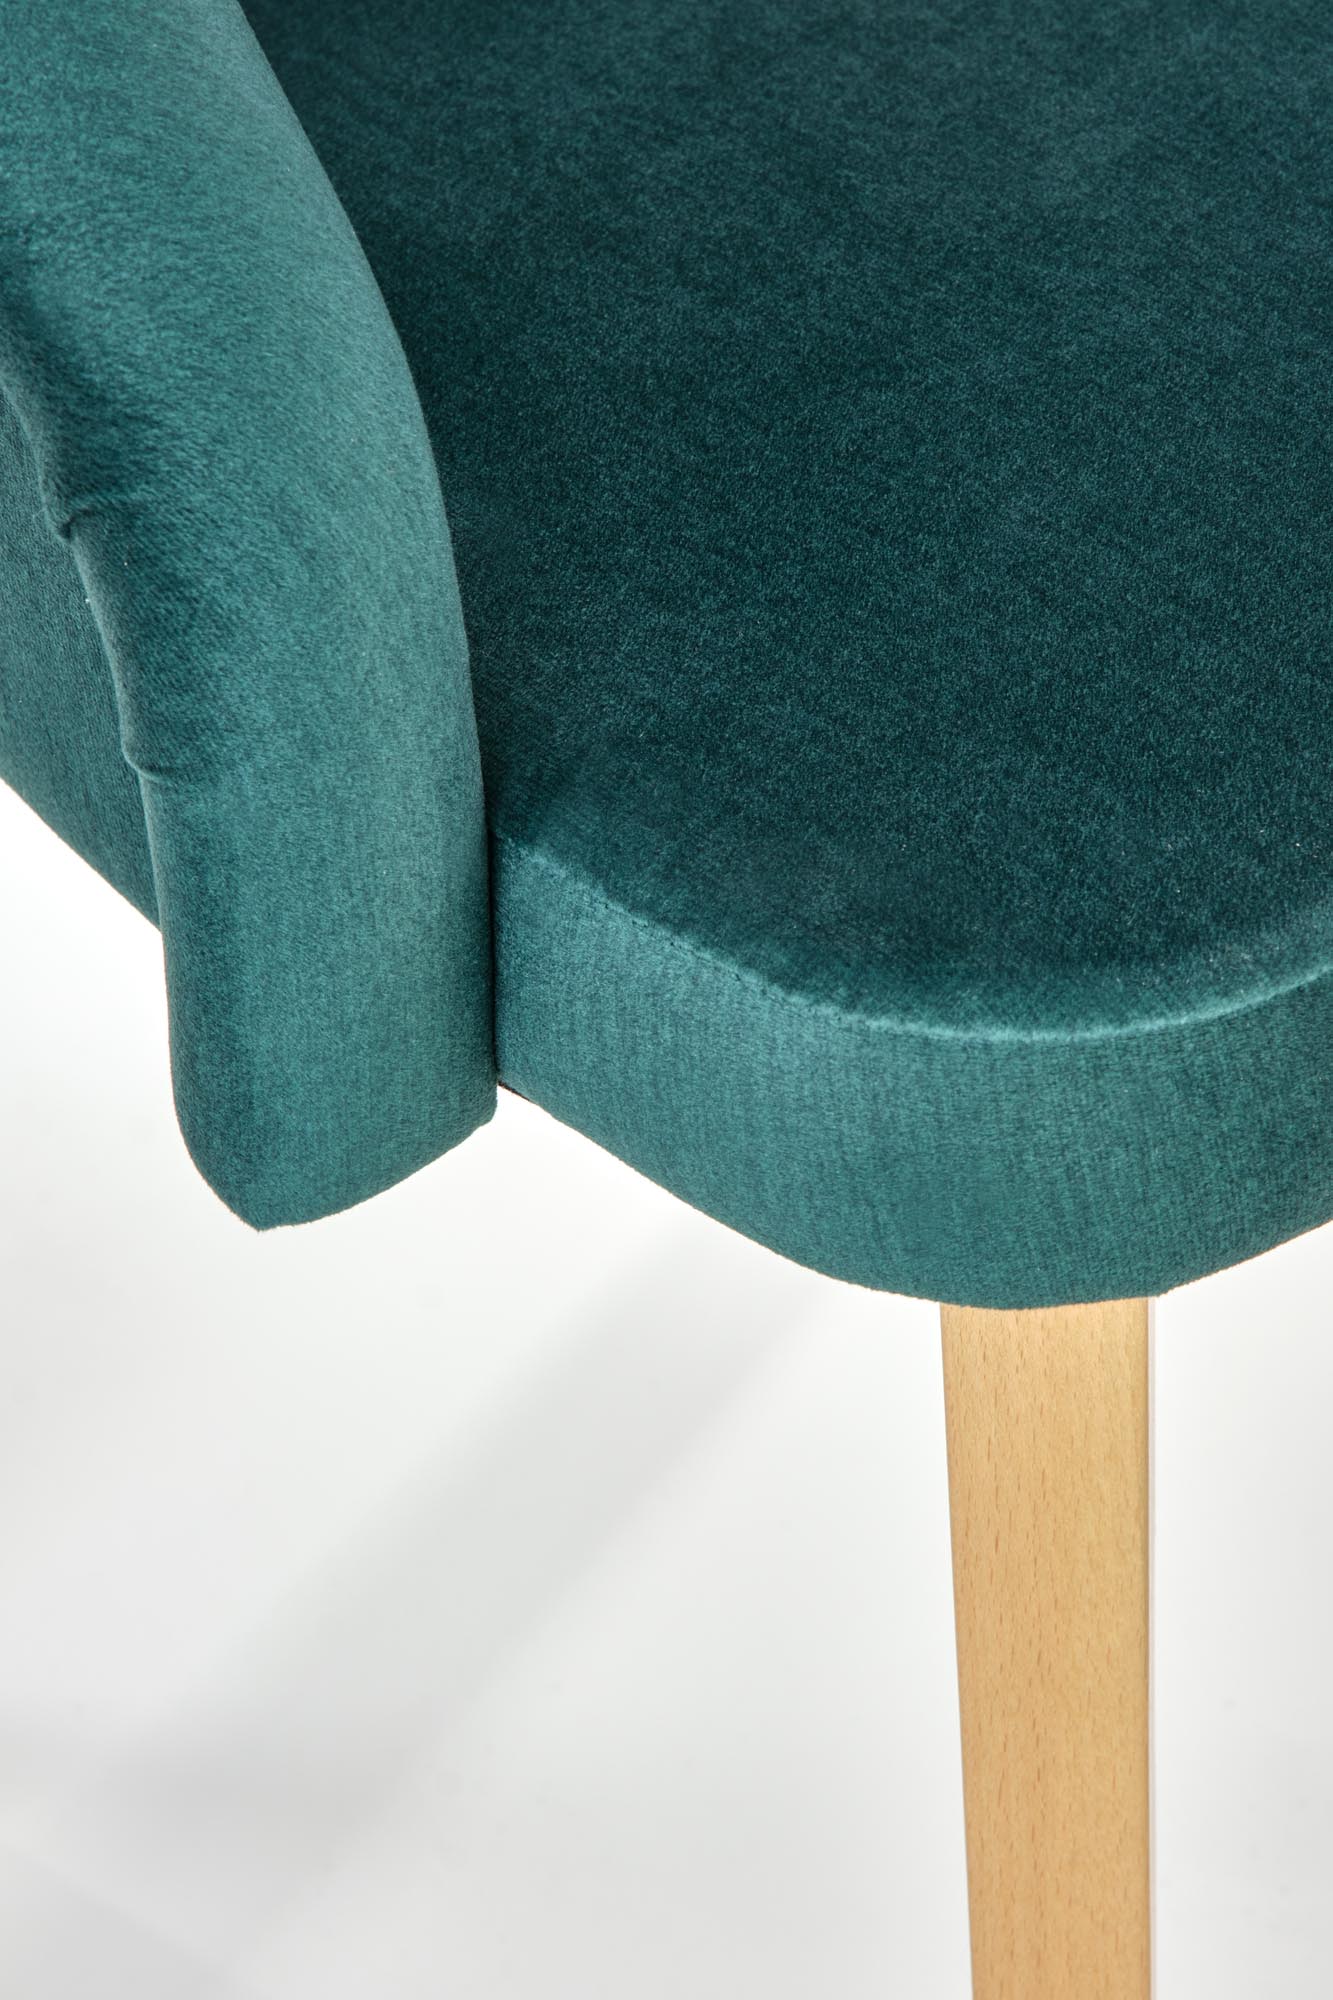 TOLEDO 2 krzesło dąb miodowy / tap. MONOLITH 37 (ciemny zielony) toledo 2 krzesło dąb miodowy / tap. monolith 37 (ciemny zielony)